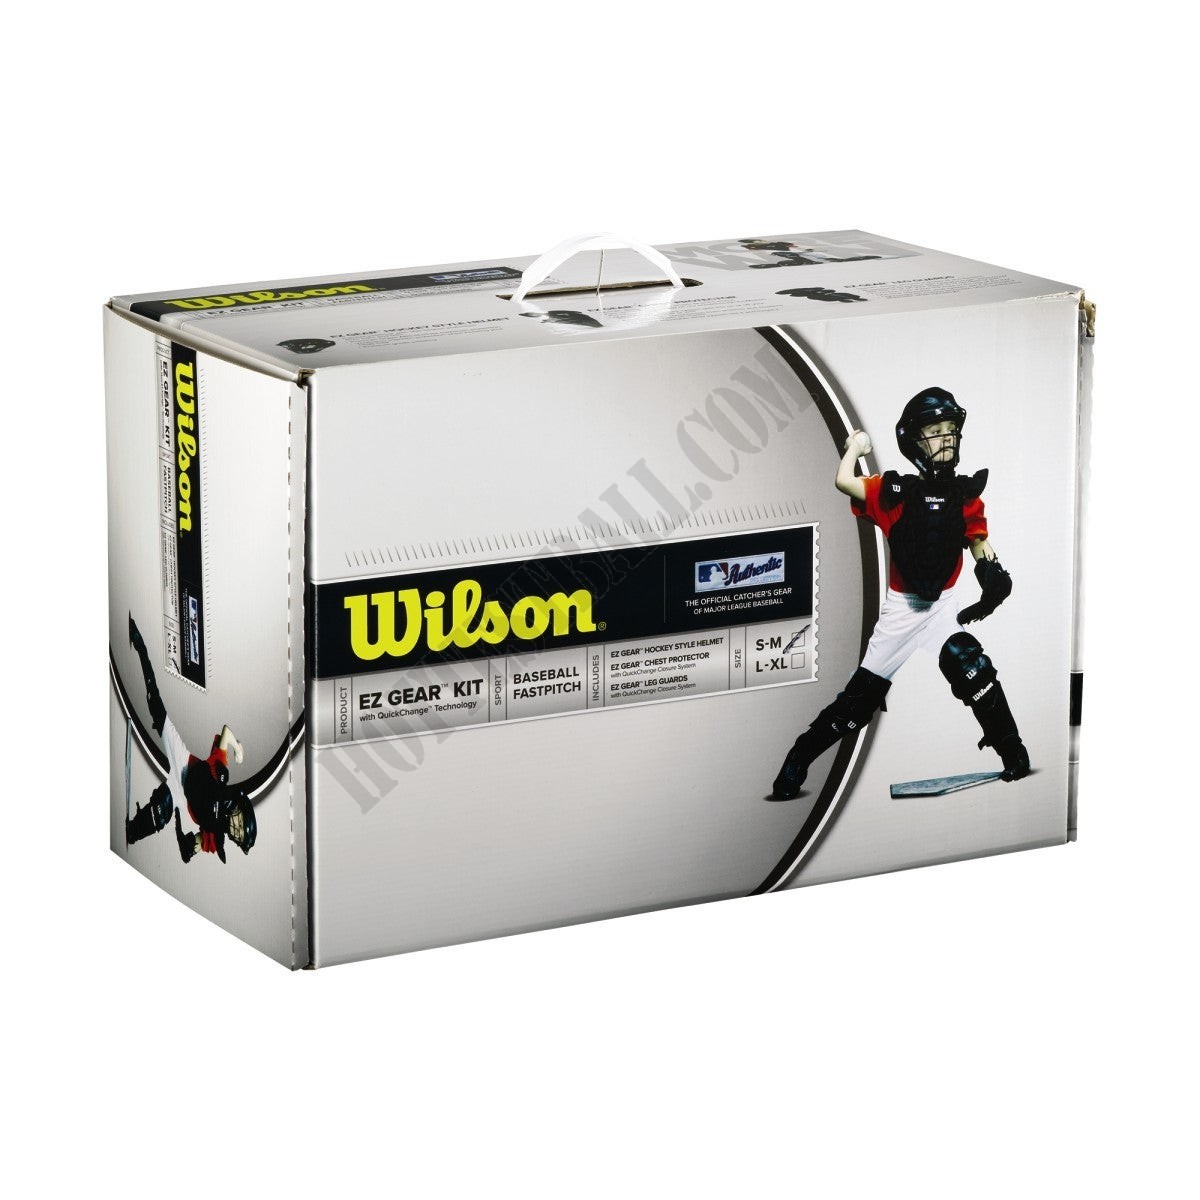 EZ Gear Catcher's Kit - New York Mets - Wilson Discount Store - -5